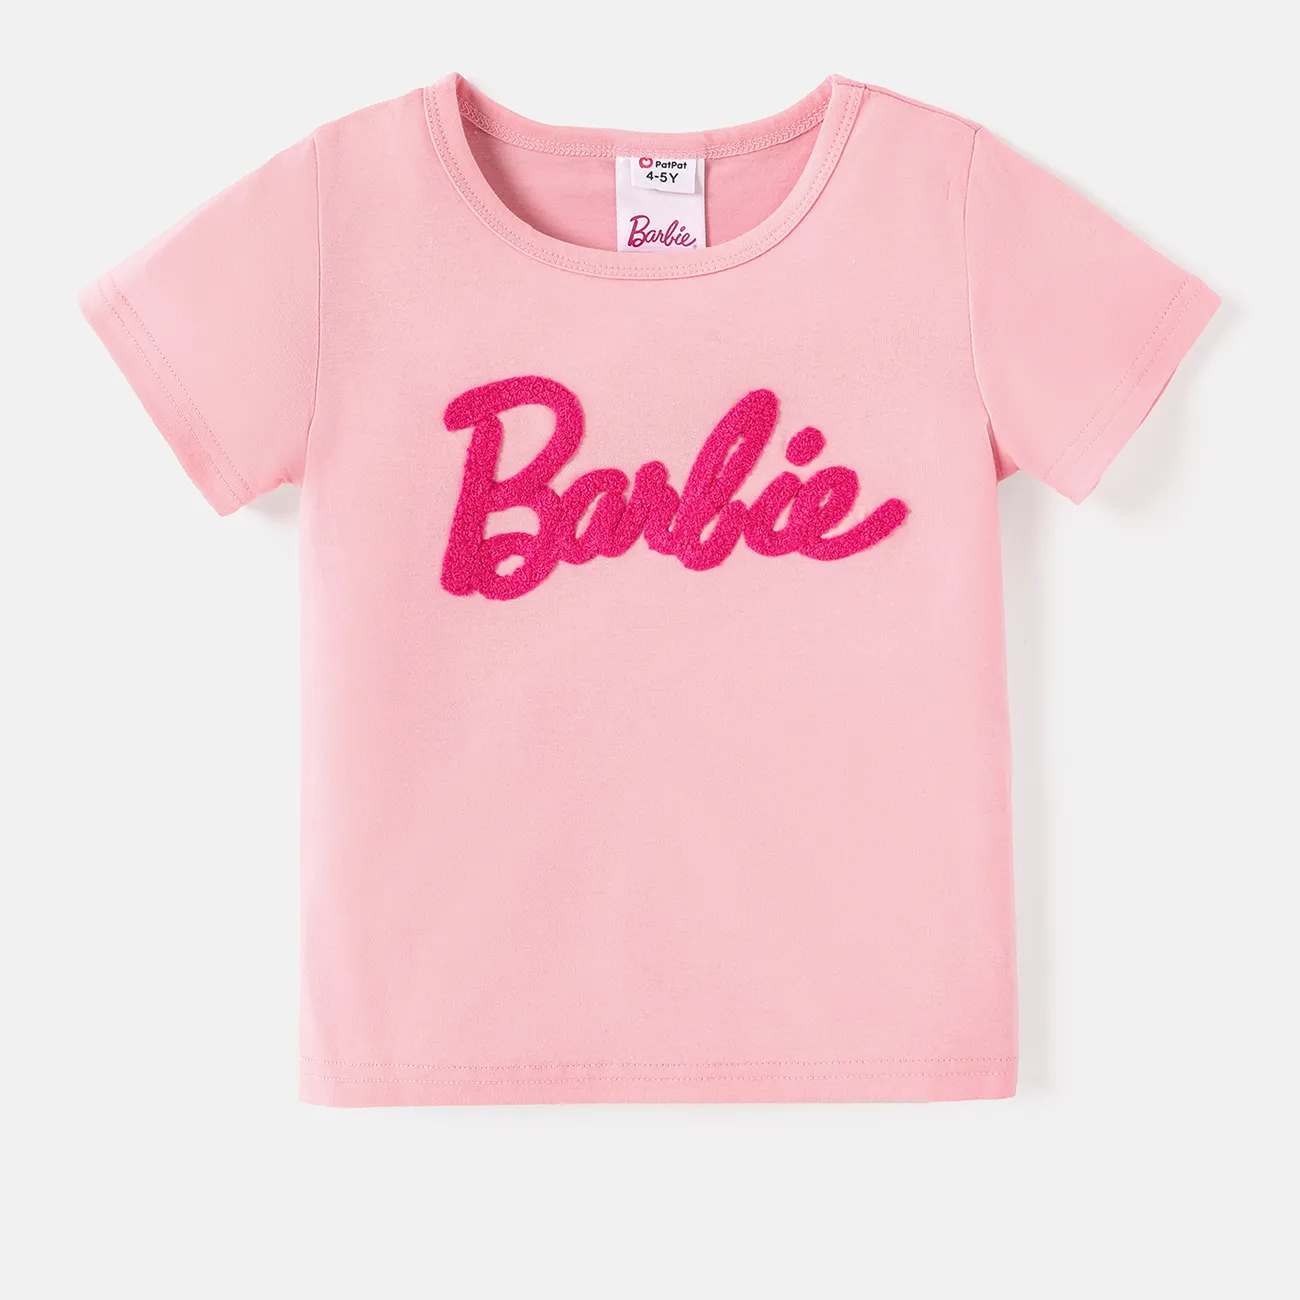 Barbie Ragazza Casual Maglietta Rosa Chiaro big image 1